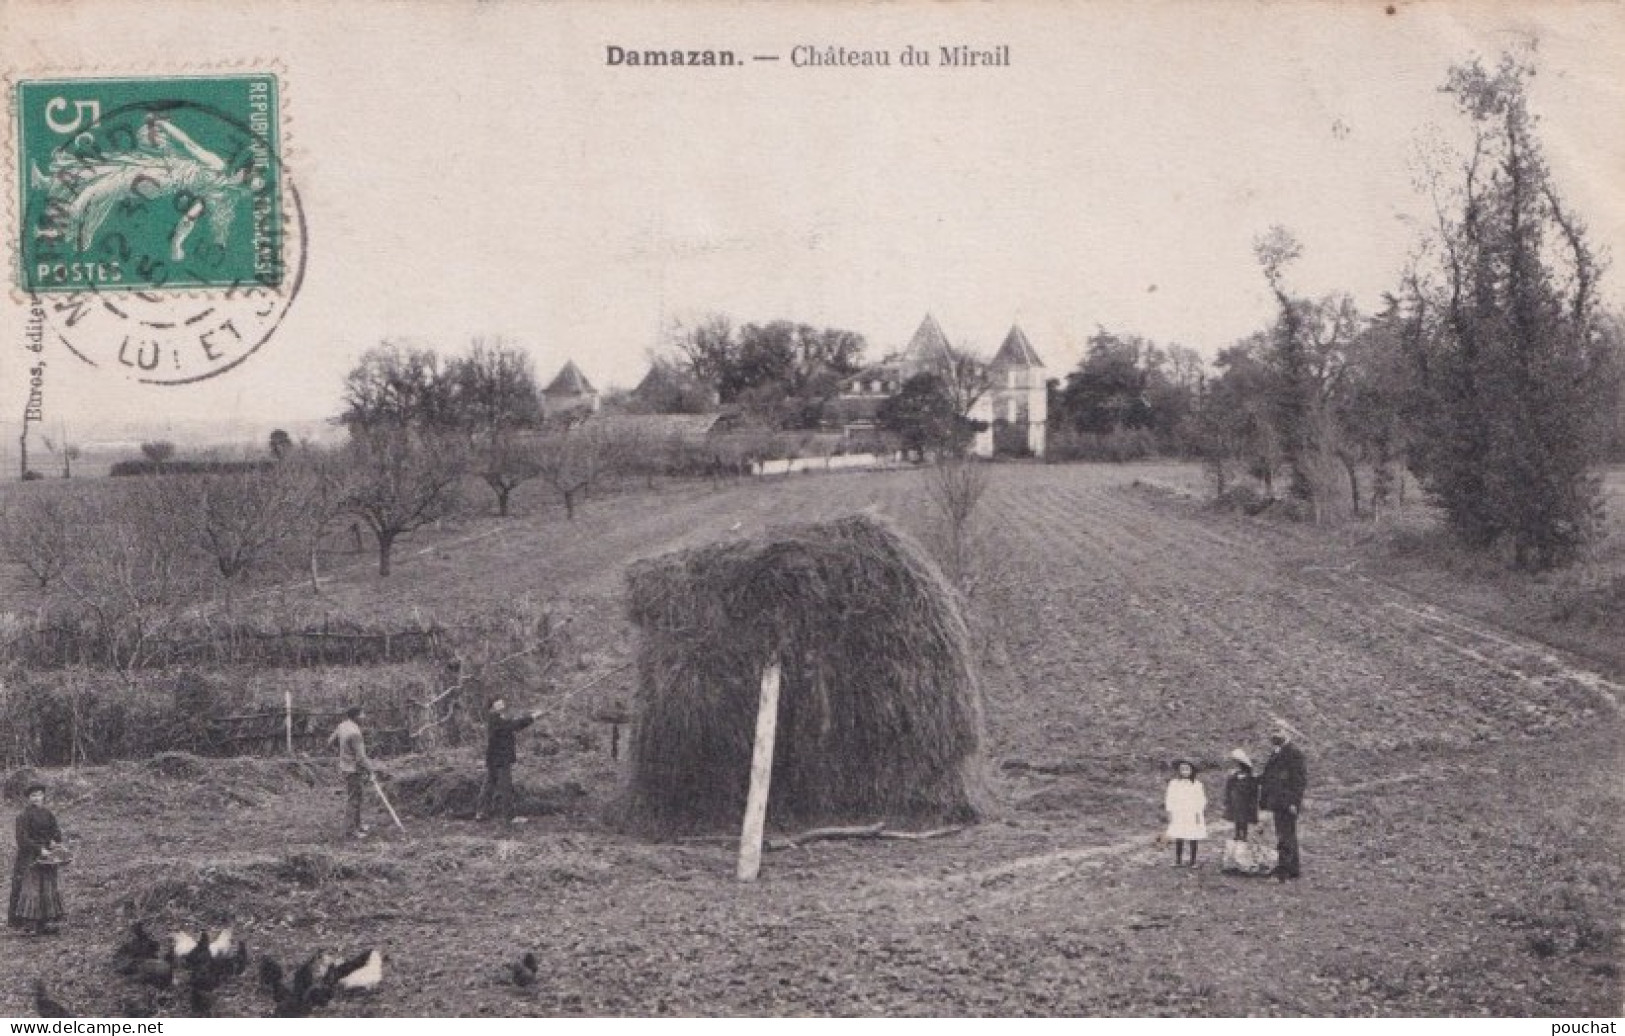 E16-47) DAMAZAN - CHATEAU DU MIRAIL  - ANIMEE - TRAVAUX DES CHAMPS DANS LE PARC - EN 1915Travaux Dans Le Parc - Damazan